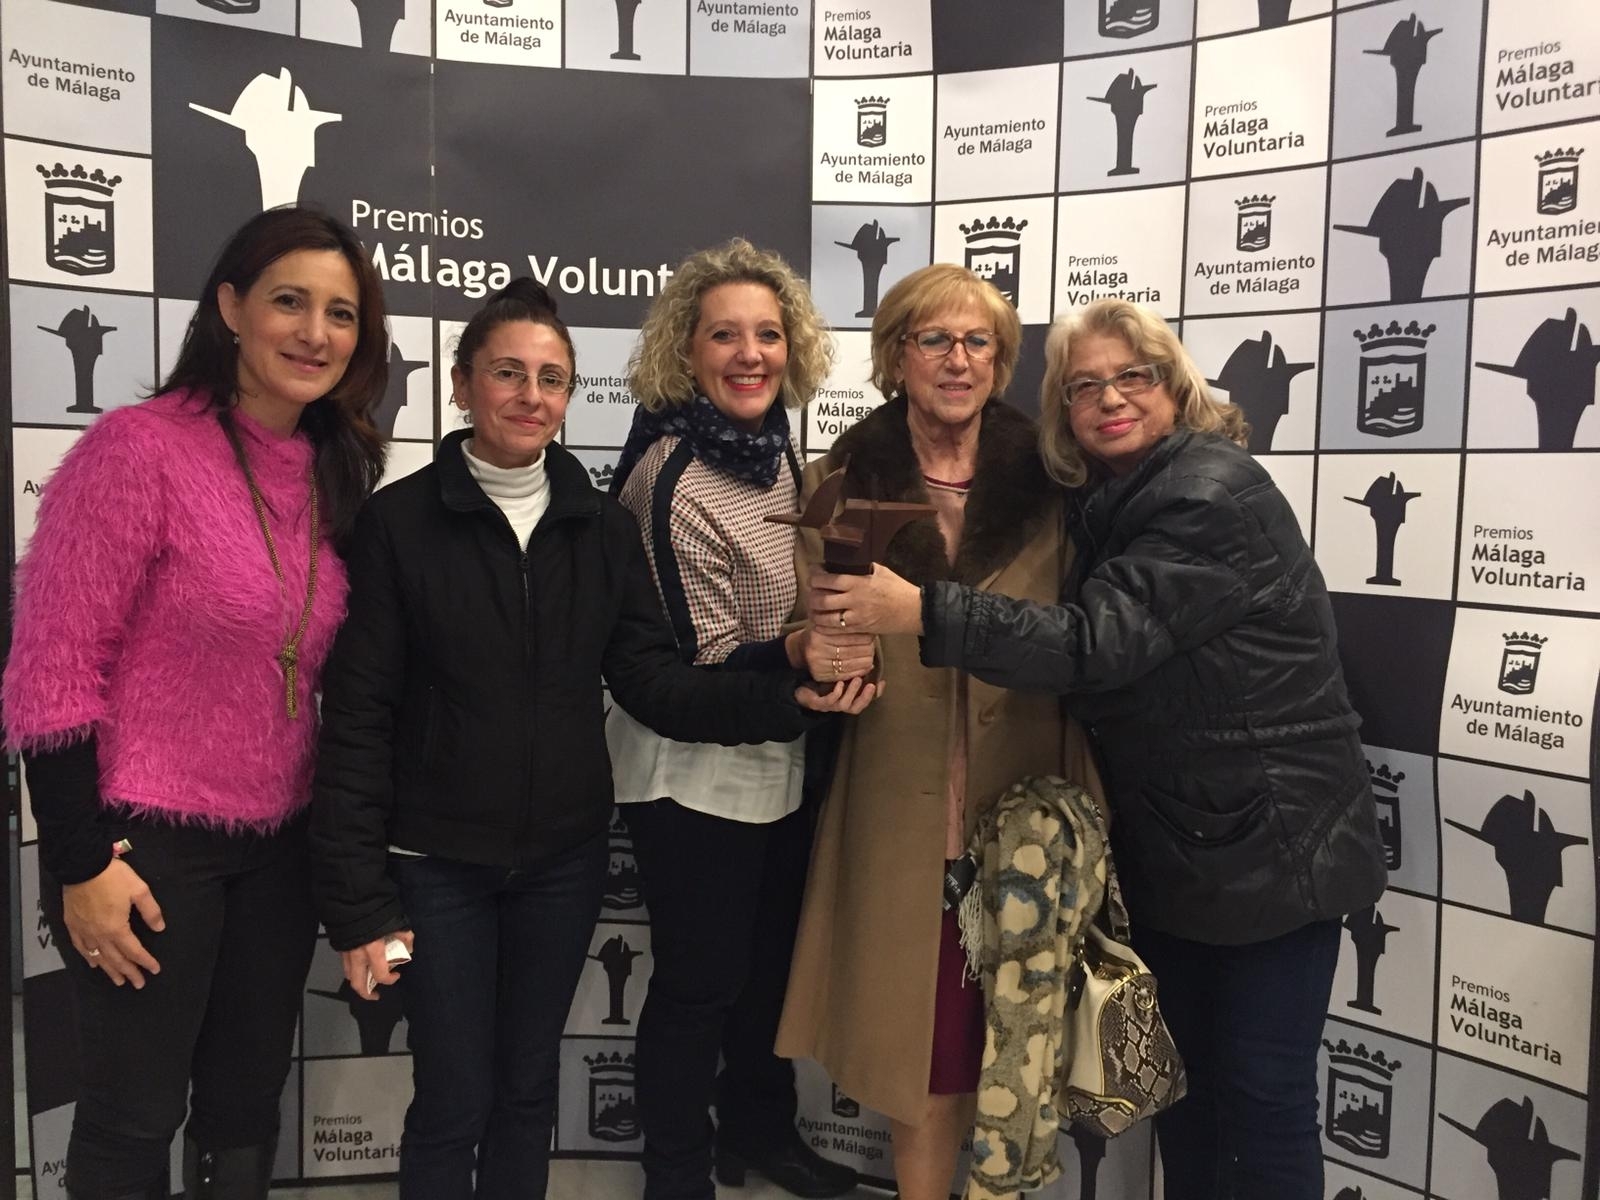 Fundación Anna O. premio Málaga Voluntaria 2018 otorgado por el Ayuntamiento de Málaga